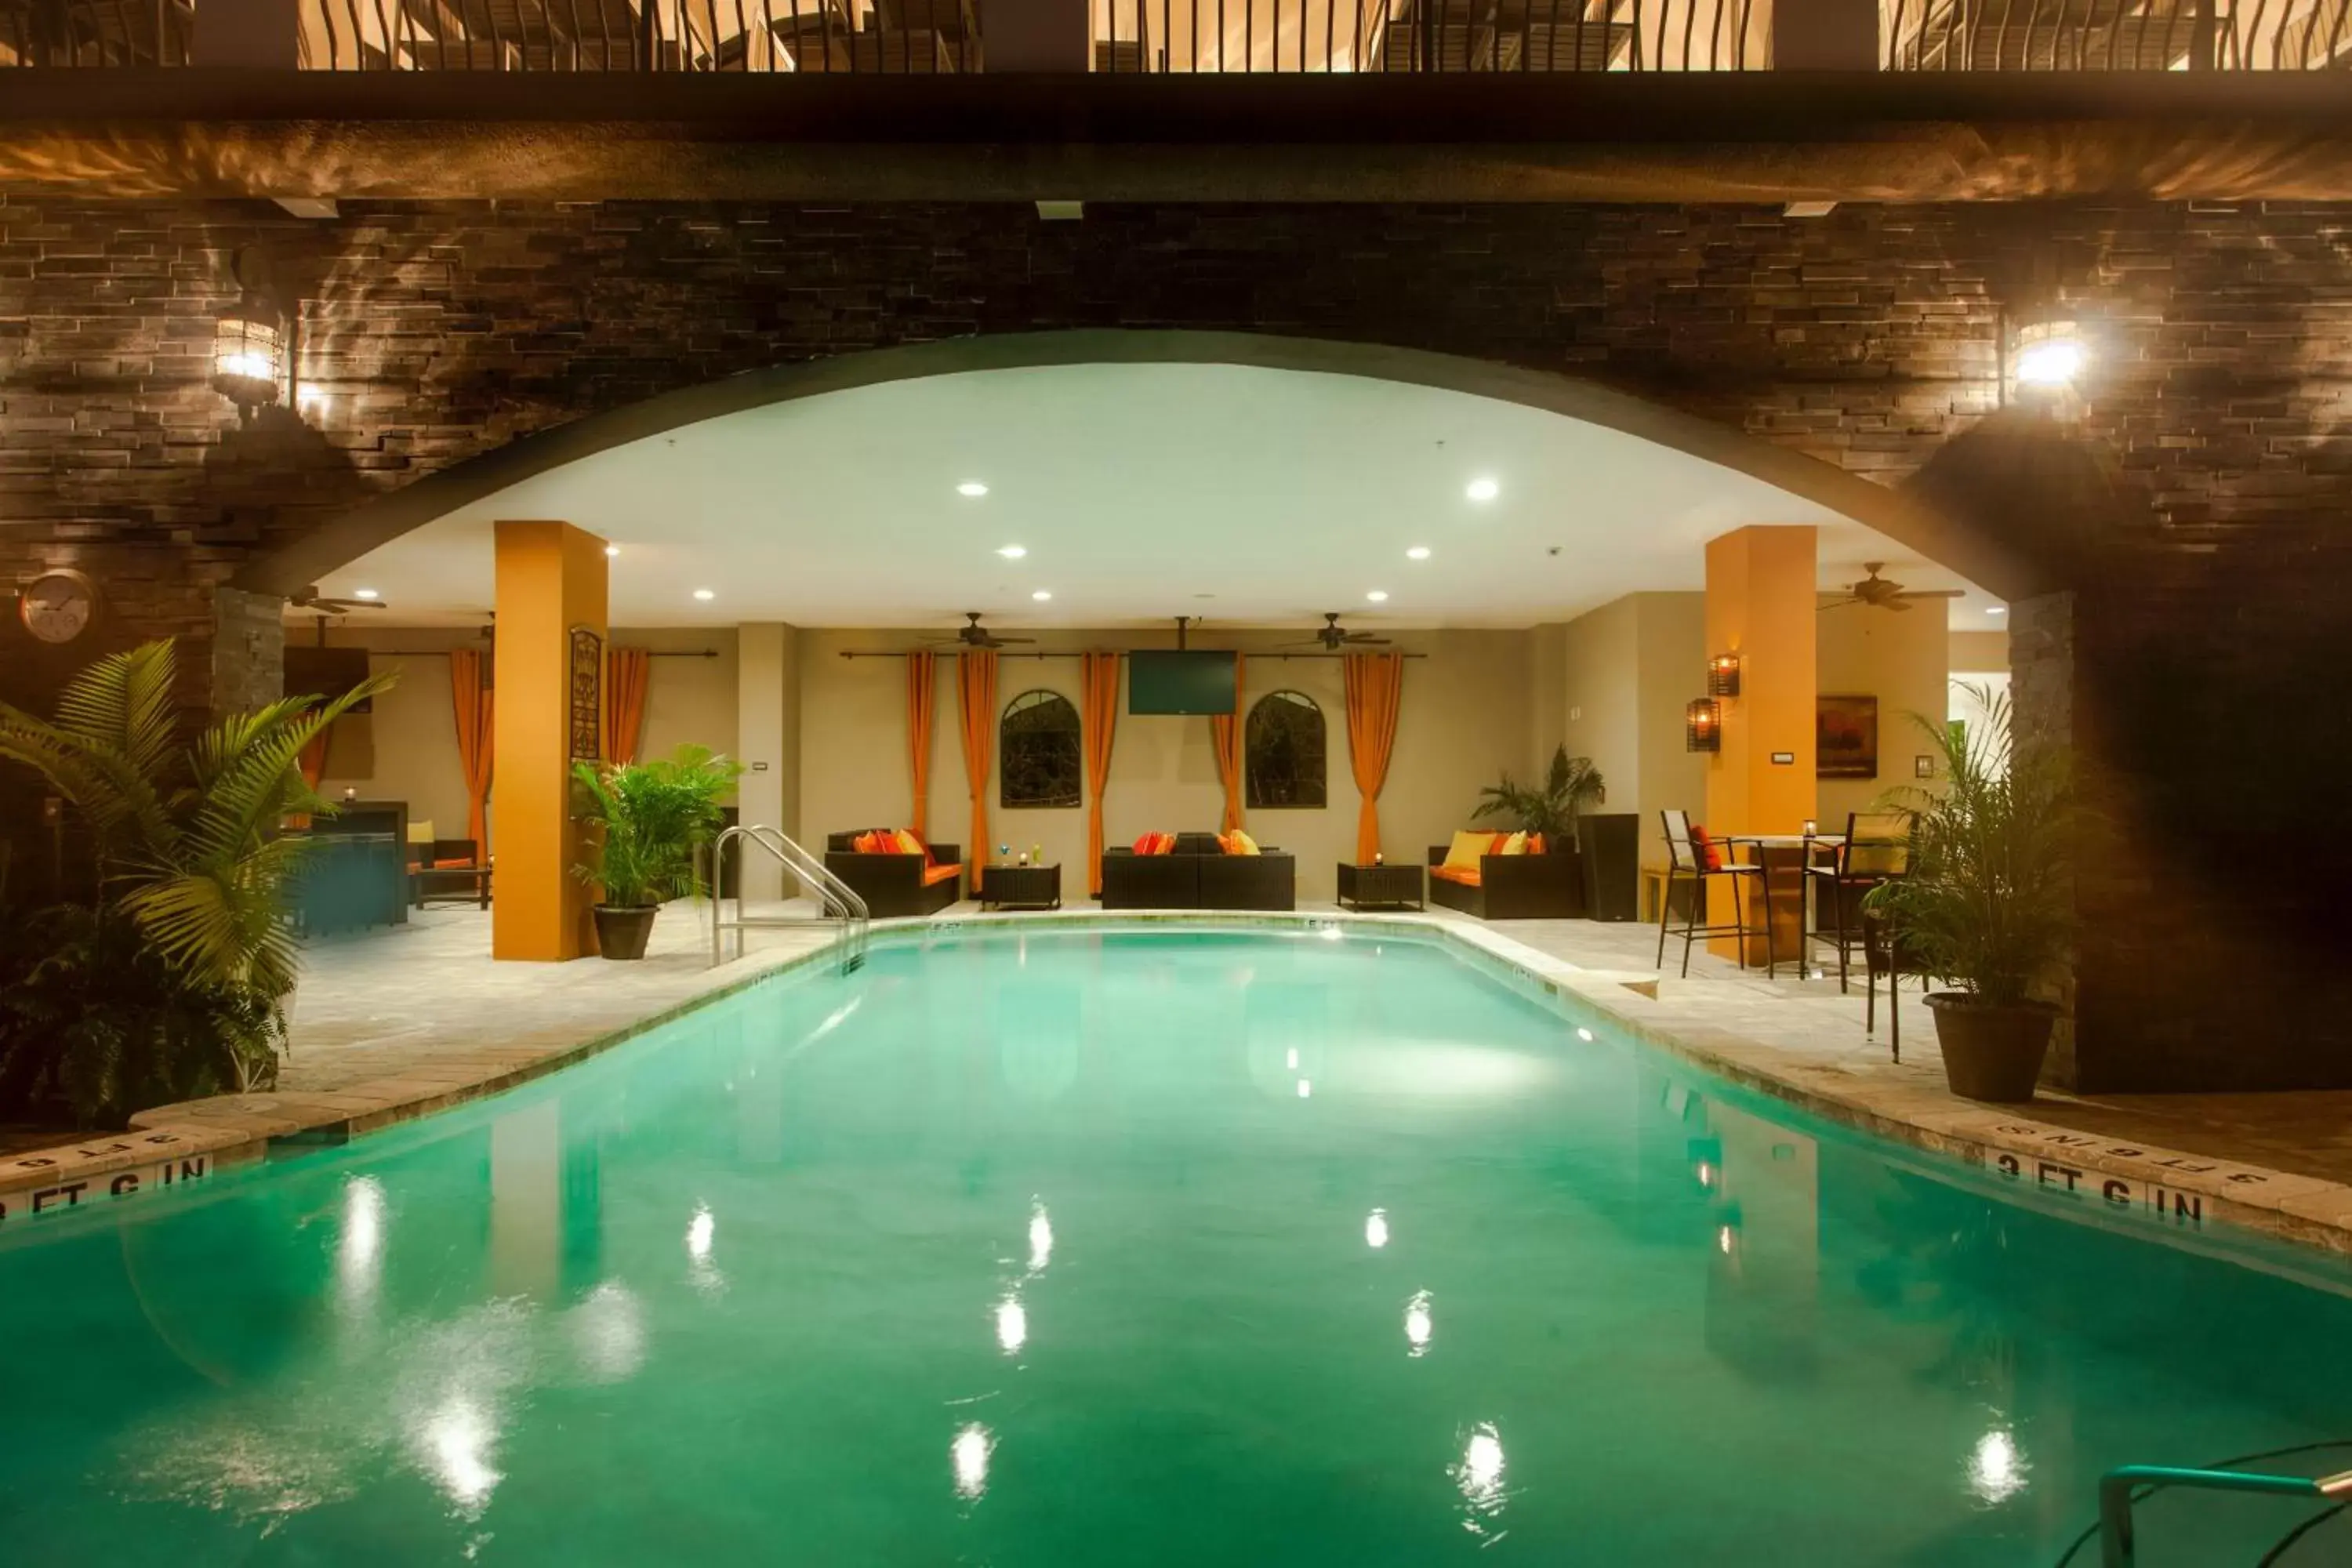 Swimming Pool in The Hotel Zamora